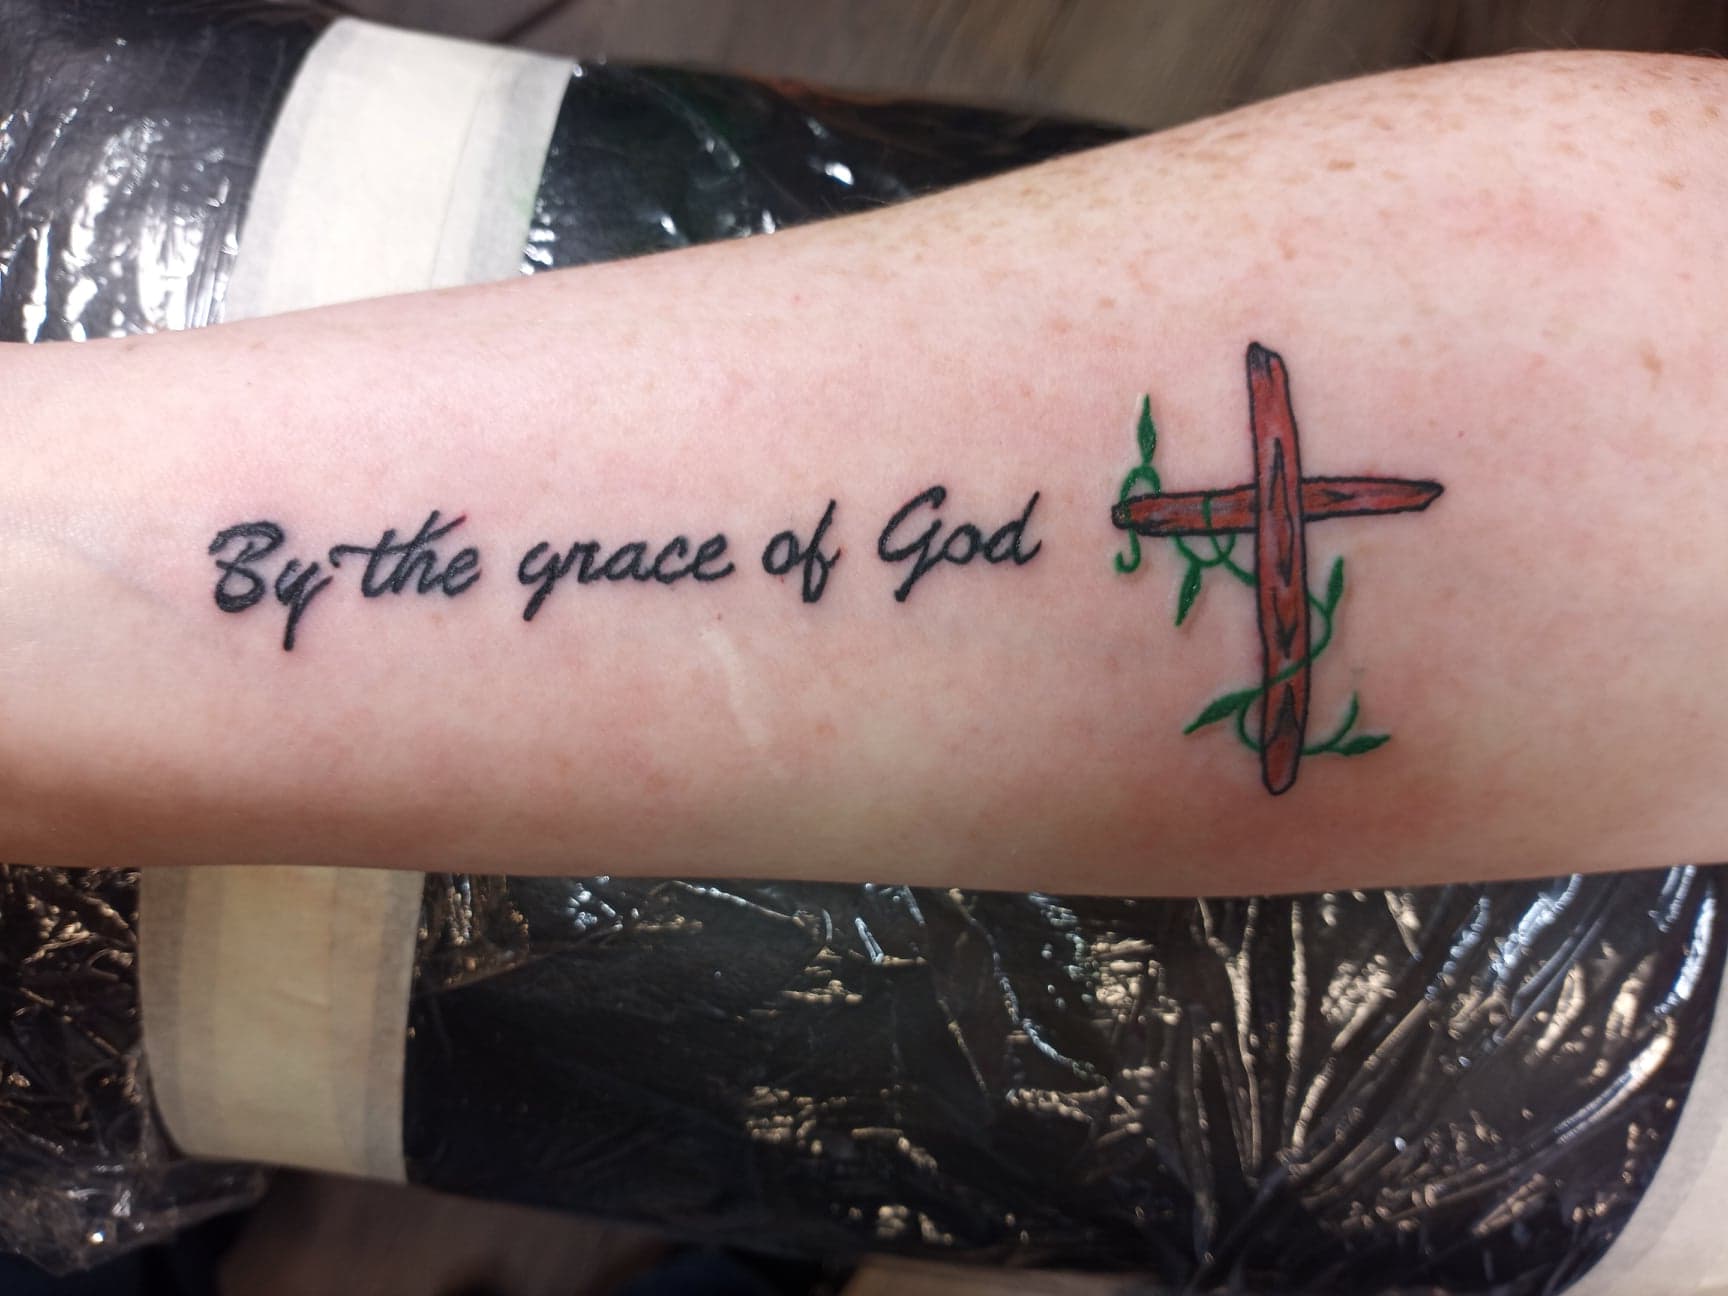 Inkd Up Tattoo on Twitter By the grace of God httpstcoZUA9hMd5D3   Twitter